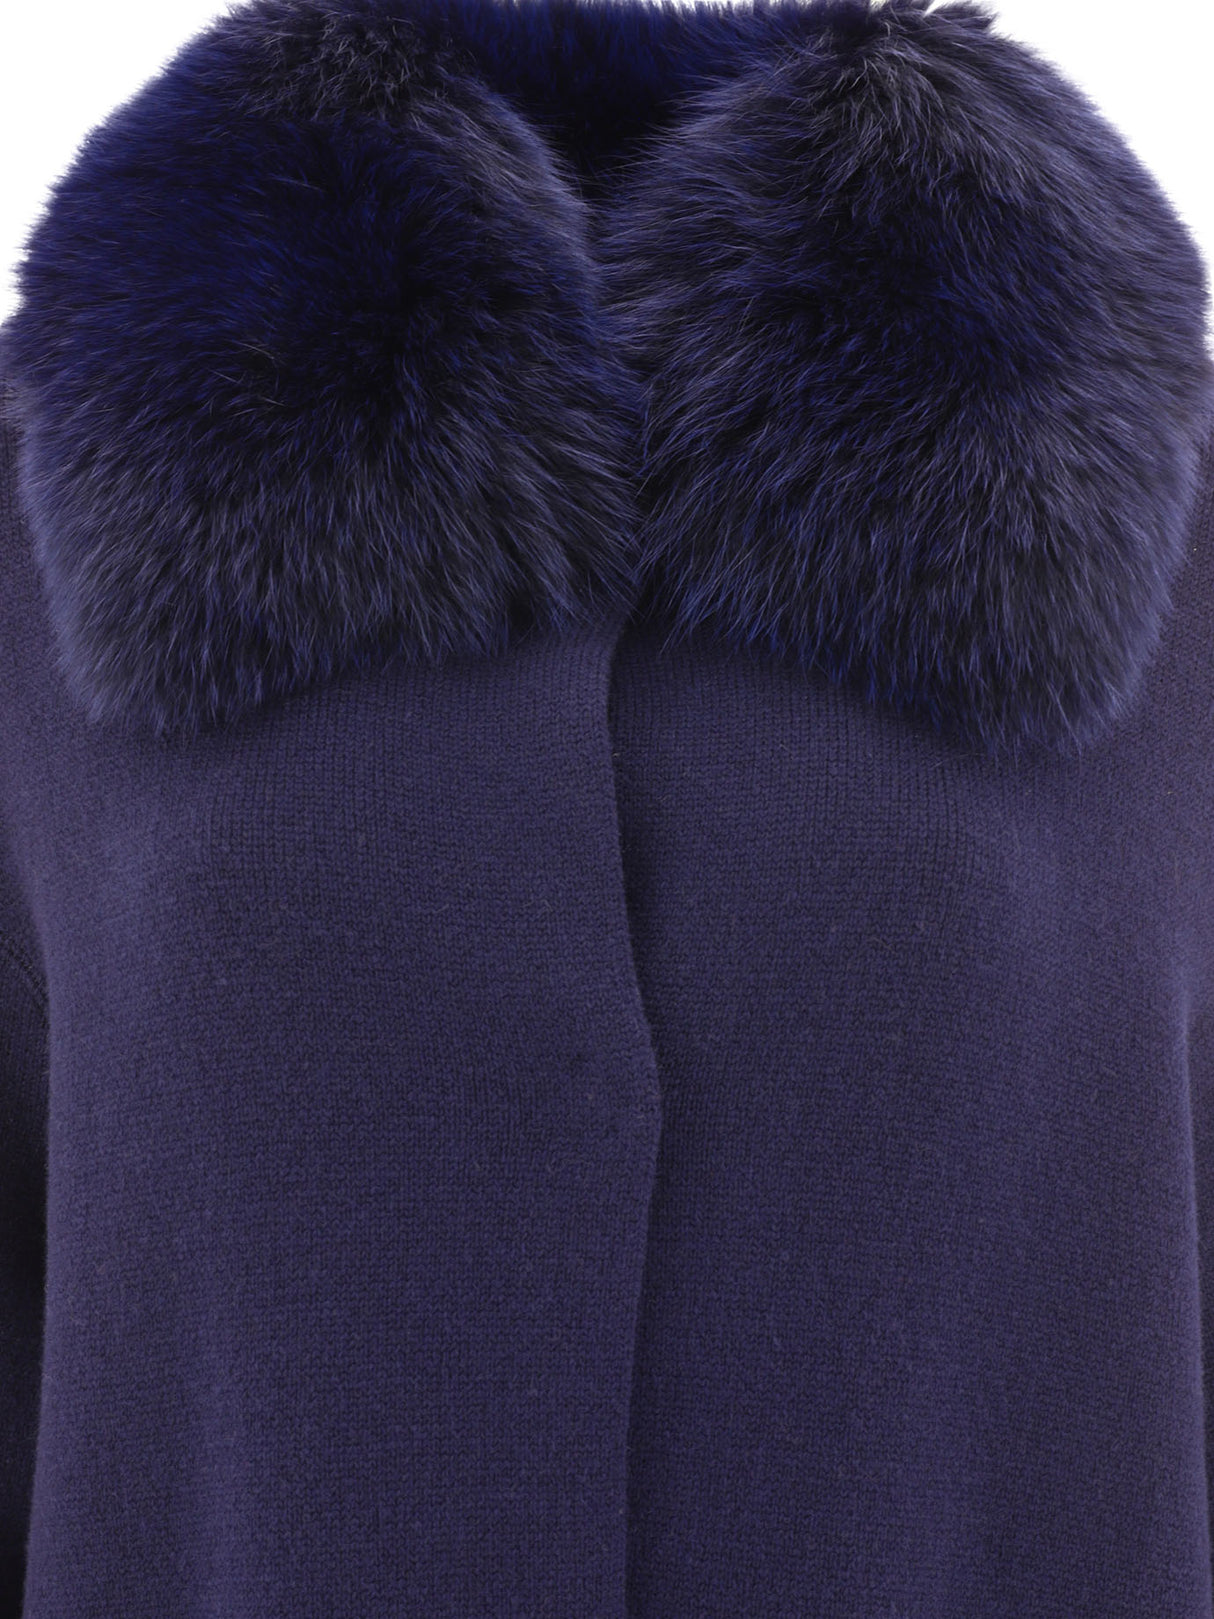 Áo khoác len và cashmere xanh dành cho nữ - Bộ sưu tập mùa FW23